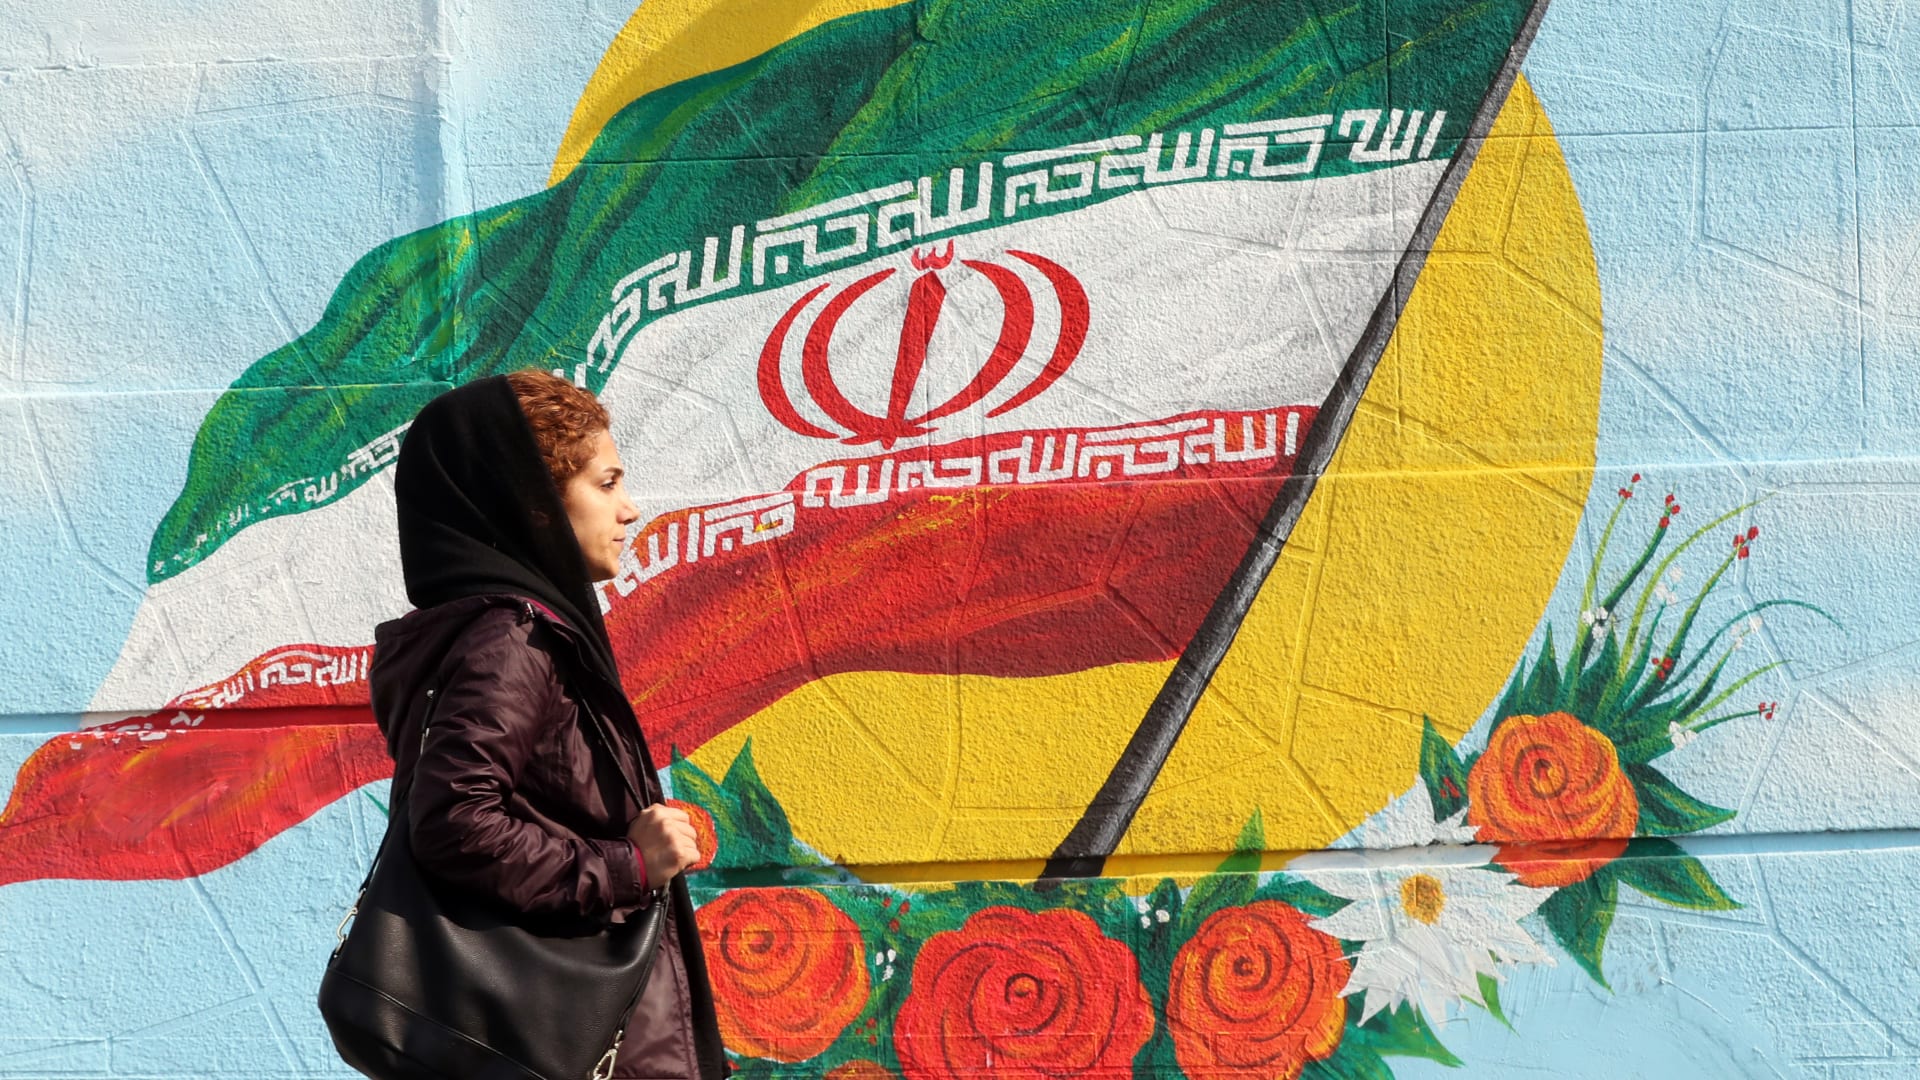 إيران تراجع قانون الحجاب الإجباري.. وتضارب رسمي حول إلغاء "شرطة الأخلاق"